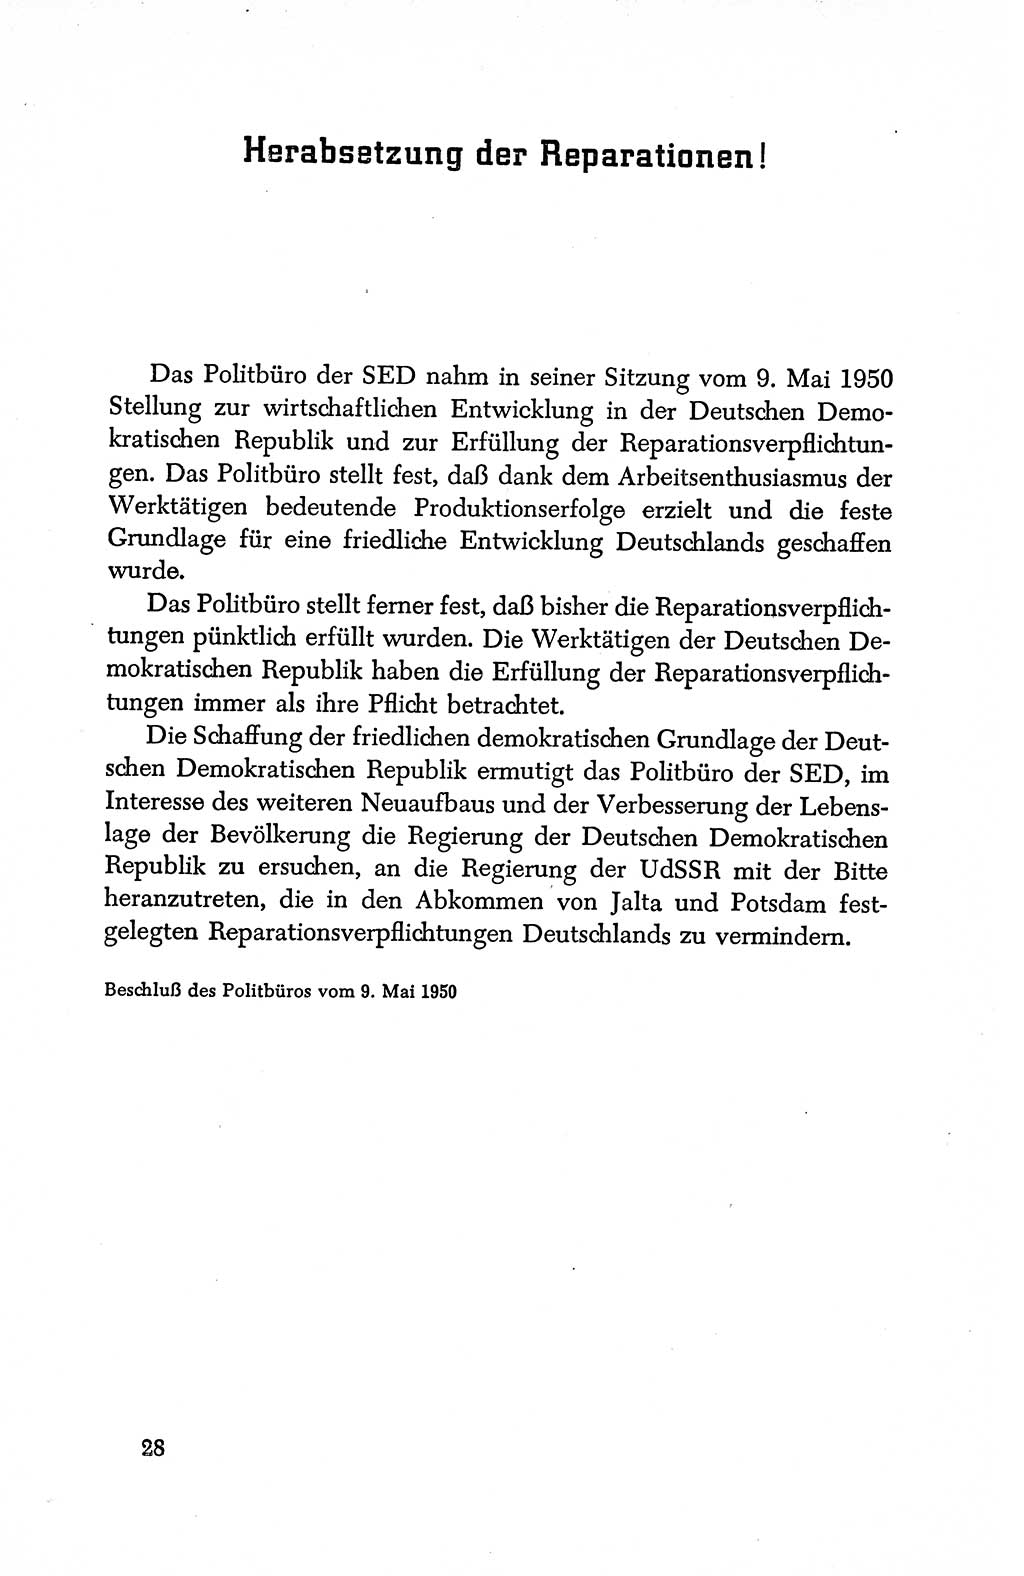 Dokumente der Sozialistischen Einheitspartei Deutschlands (SED) [Deutsche Demokratische Republik (DDR)] 1950-1952, Seite 28 (Dok. SED DDR 1950-1952, S. 28)